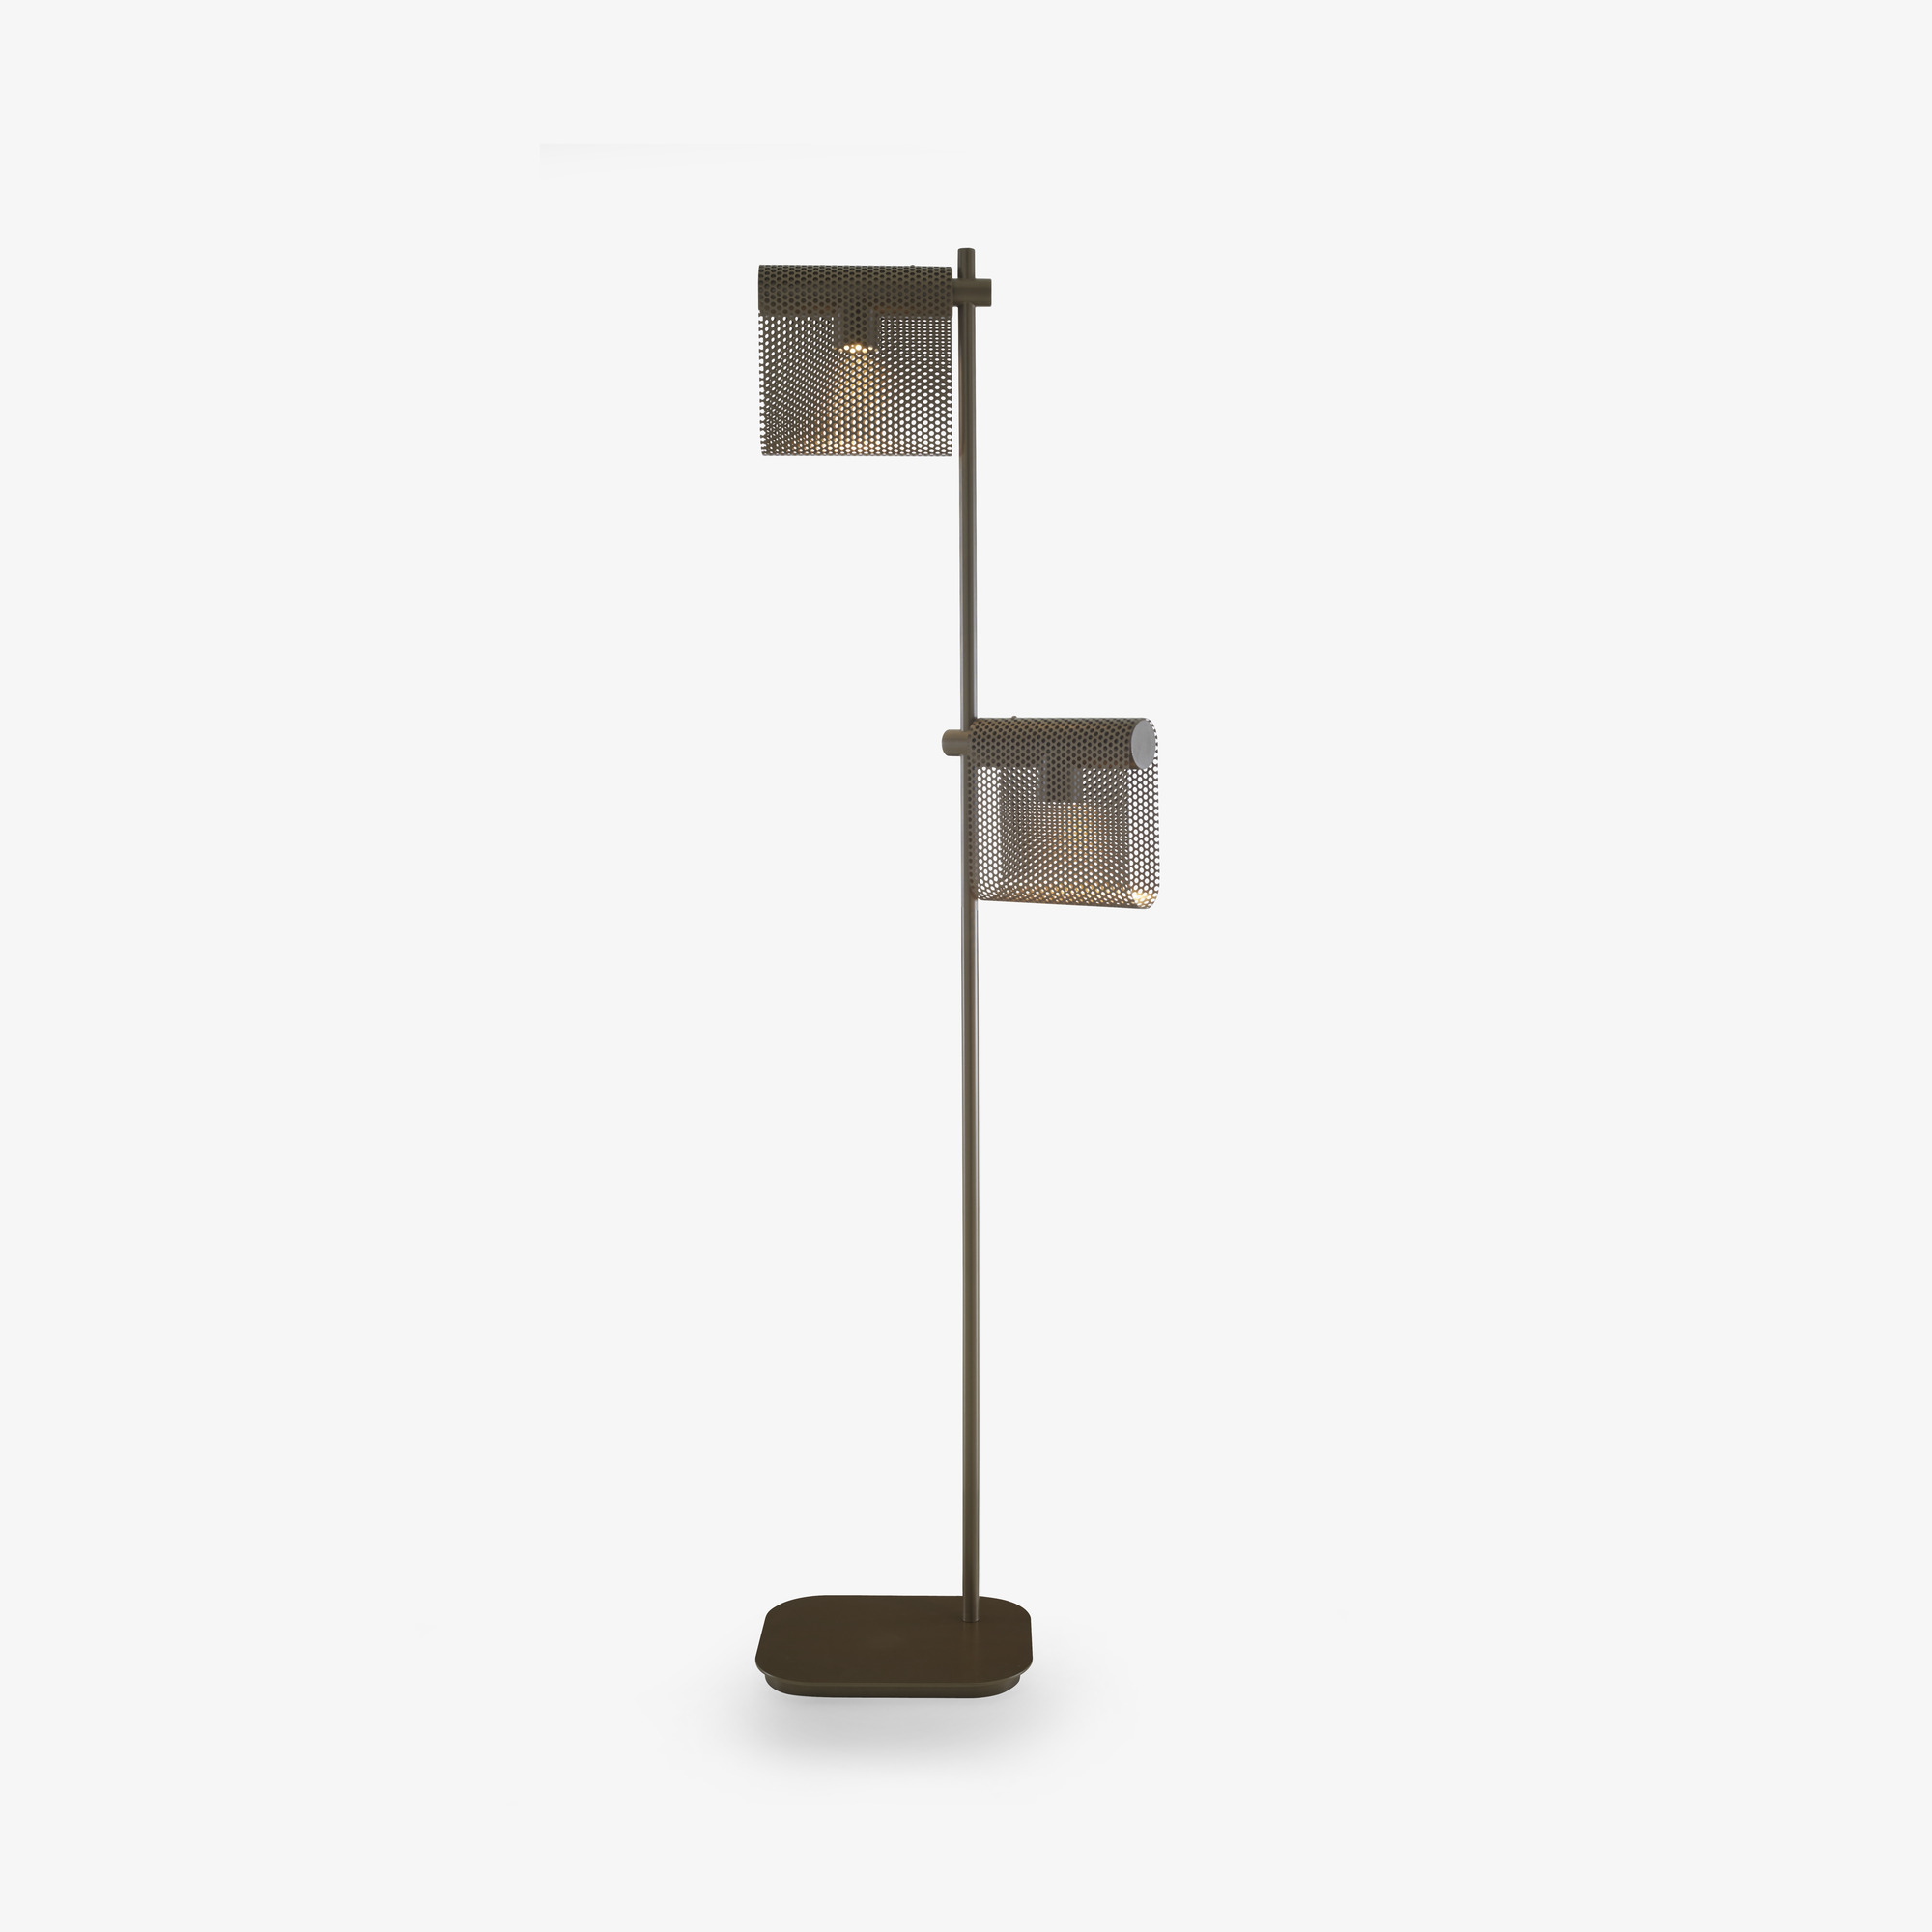 Image Floor standard lamp bronze  1